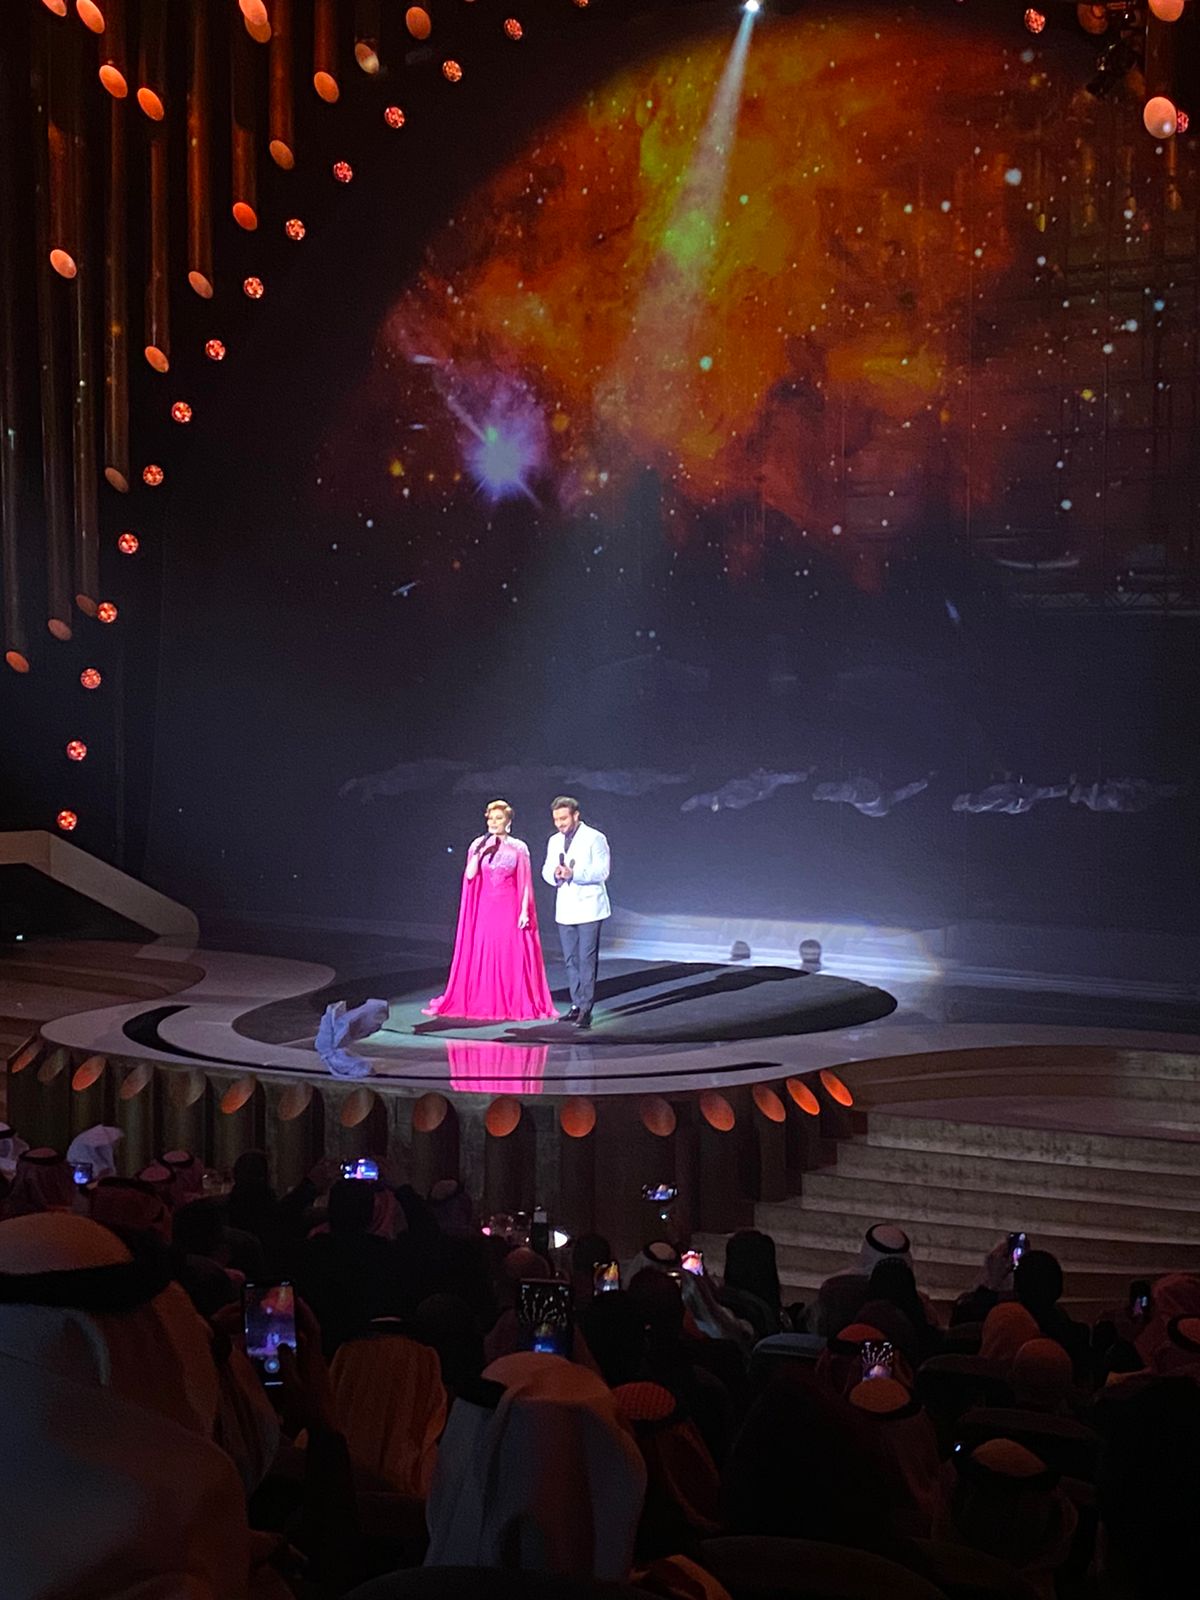 إليسا تغني ديو حلوة يابلدي مع داليدا بخاصية الهولوجرام بحفل جوائز JOY AWARDS  (1)